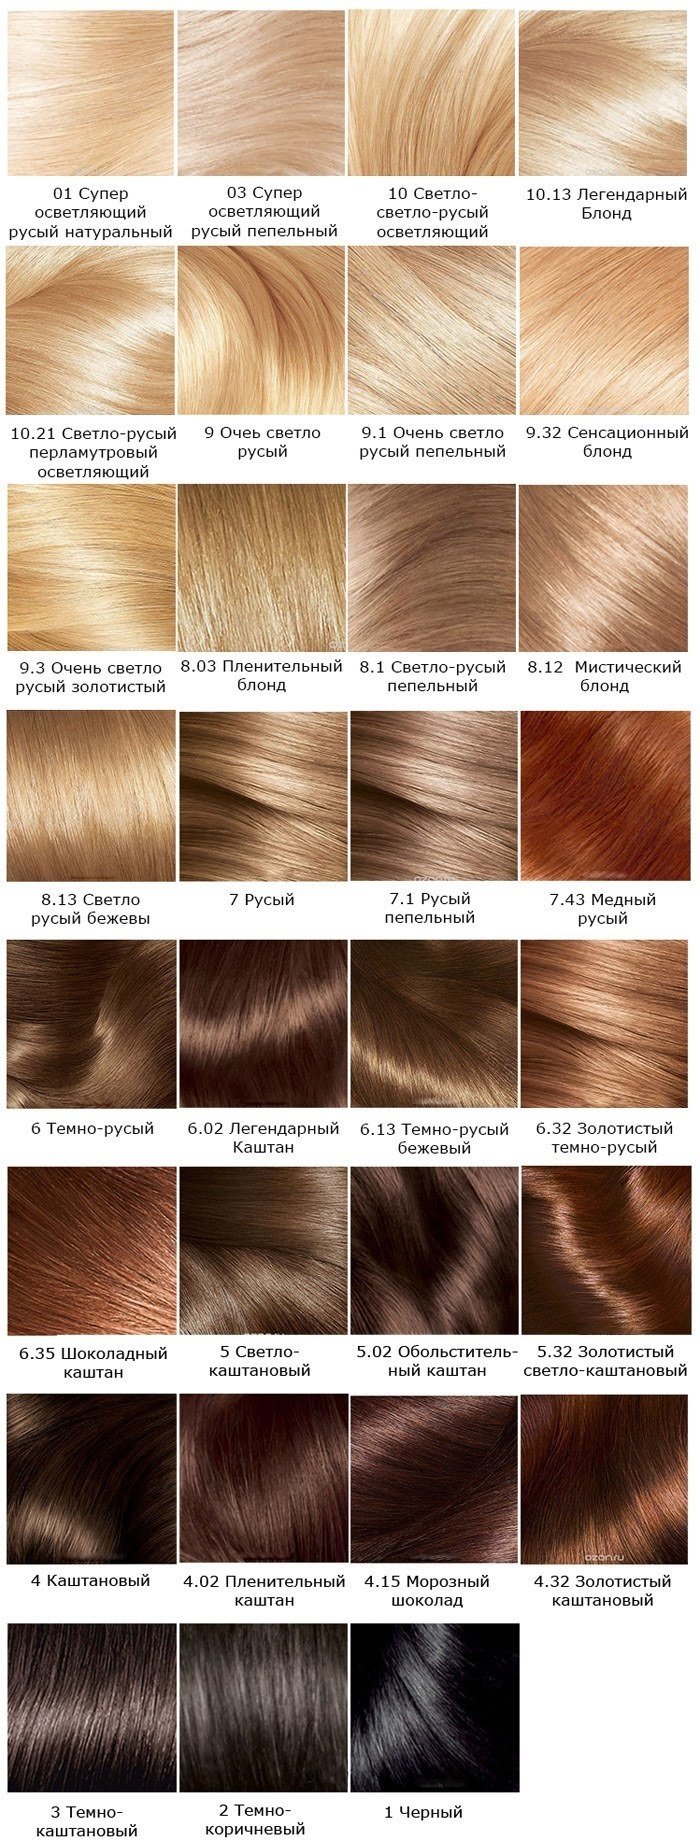 83e7be8b45b7399686c505f4d7d0f9f6 Экселанс фарба для волосся. Палітра кольорів Лореаль, фото на волоссі, склад, крем фарба, інструкція фарбування. Відгуки